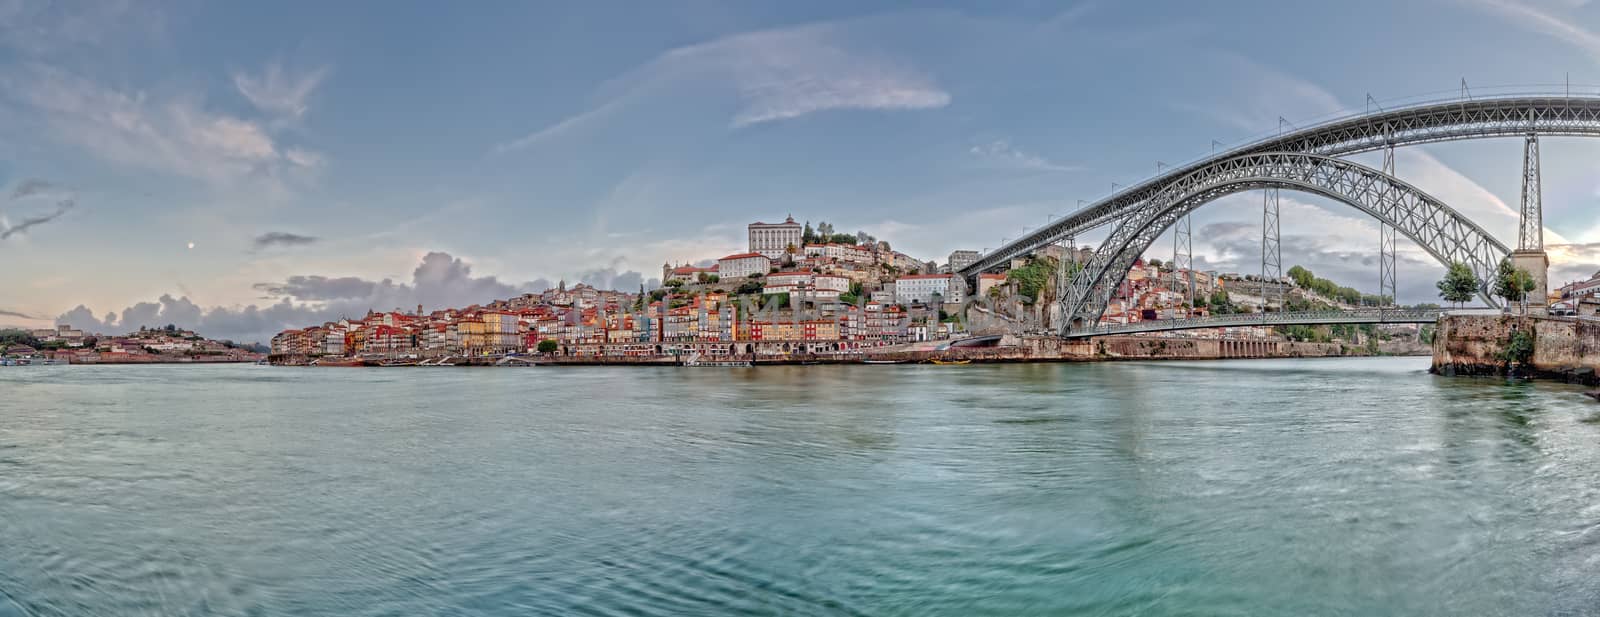 Panorama of Porto by mot1963